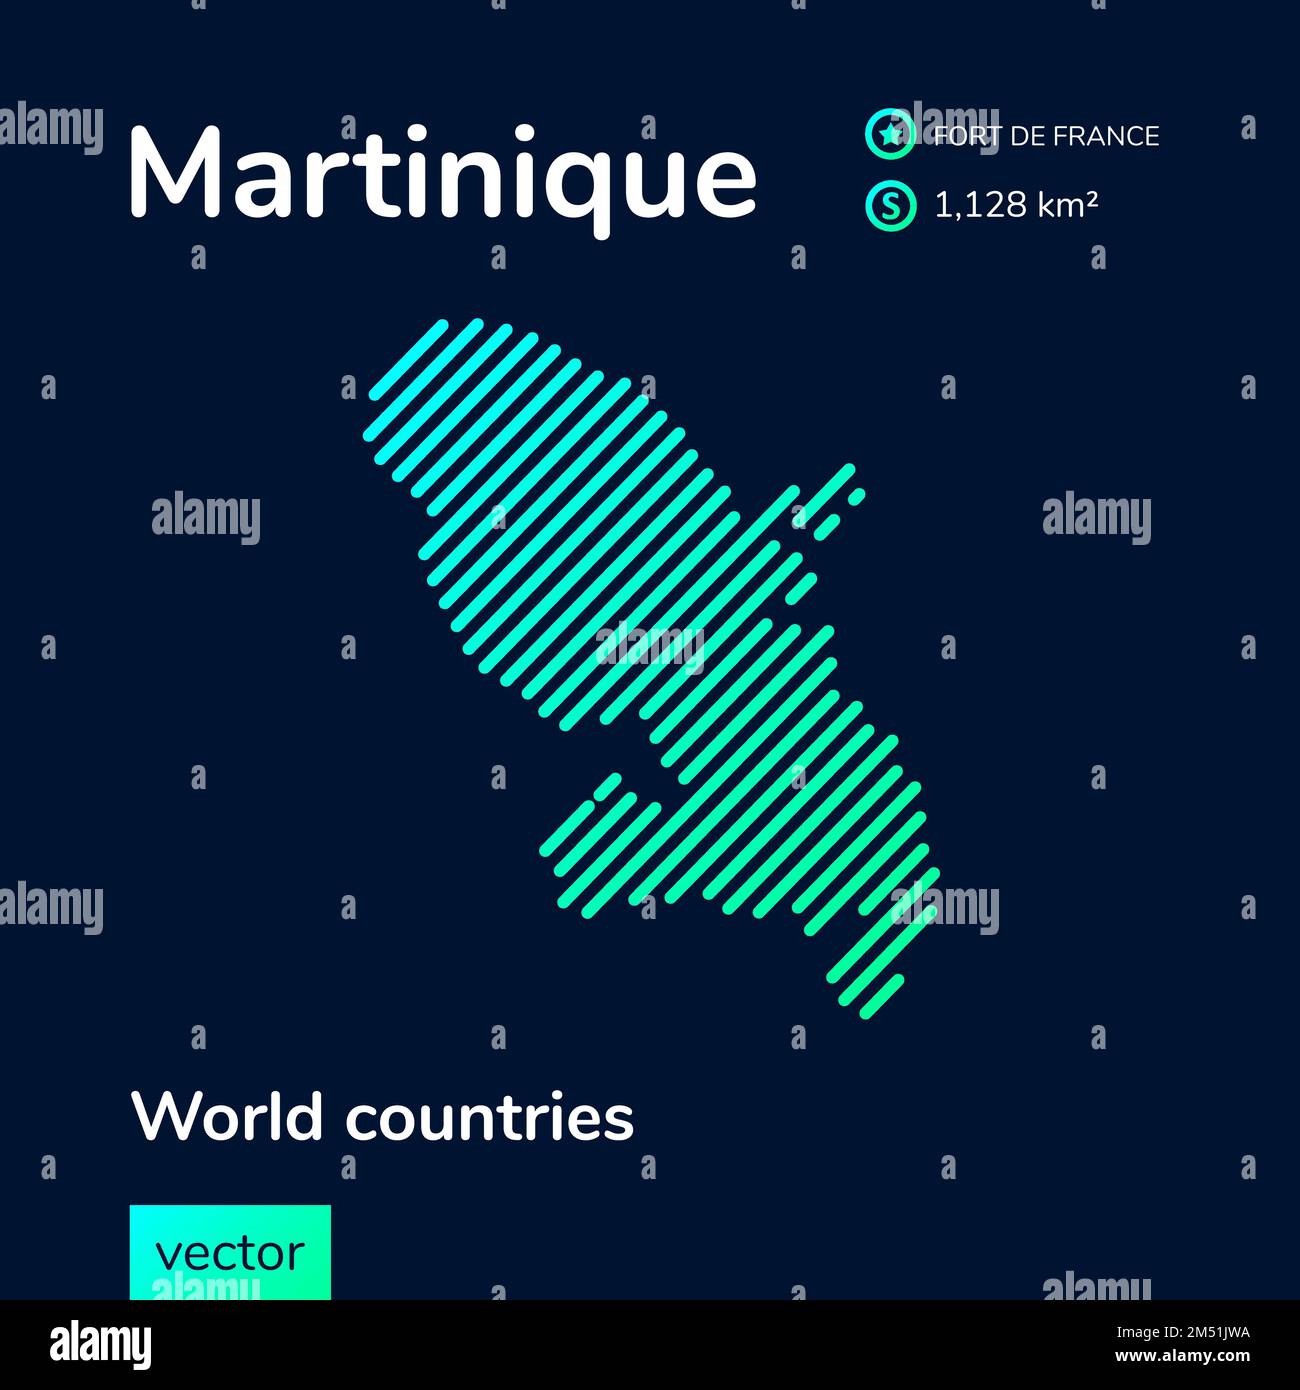 Vector créatif numérique néon plat art abstrait carte simple de la Martinique avec vert, menthe, turquoise texture rayée sur fond bleu foncé. EDUC Illustration de Vecteur